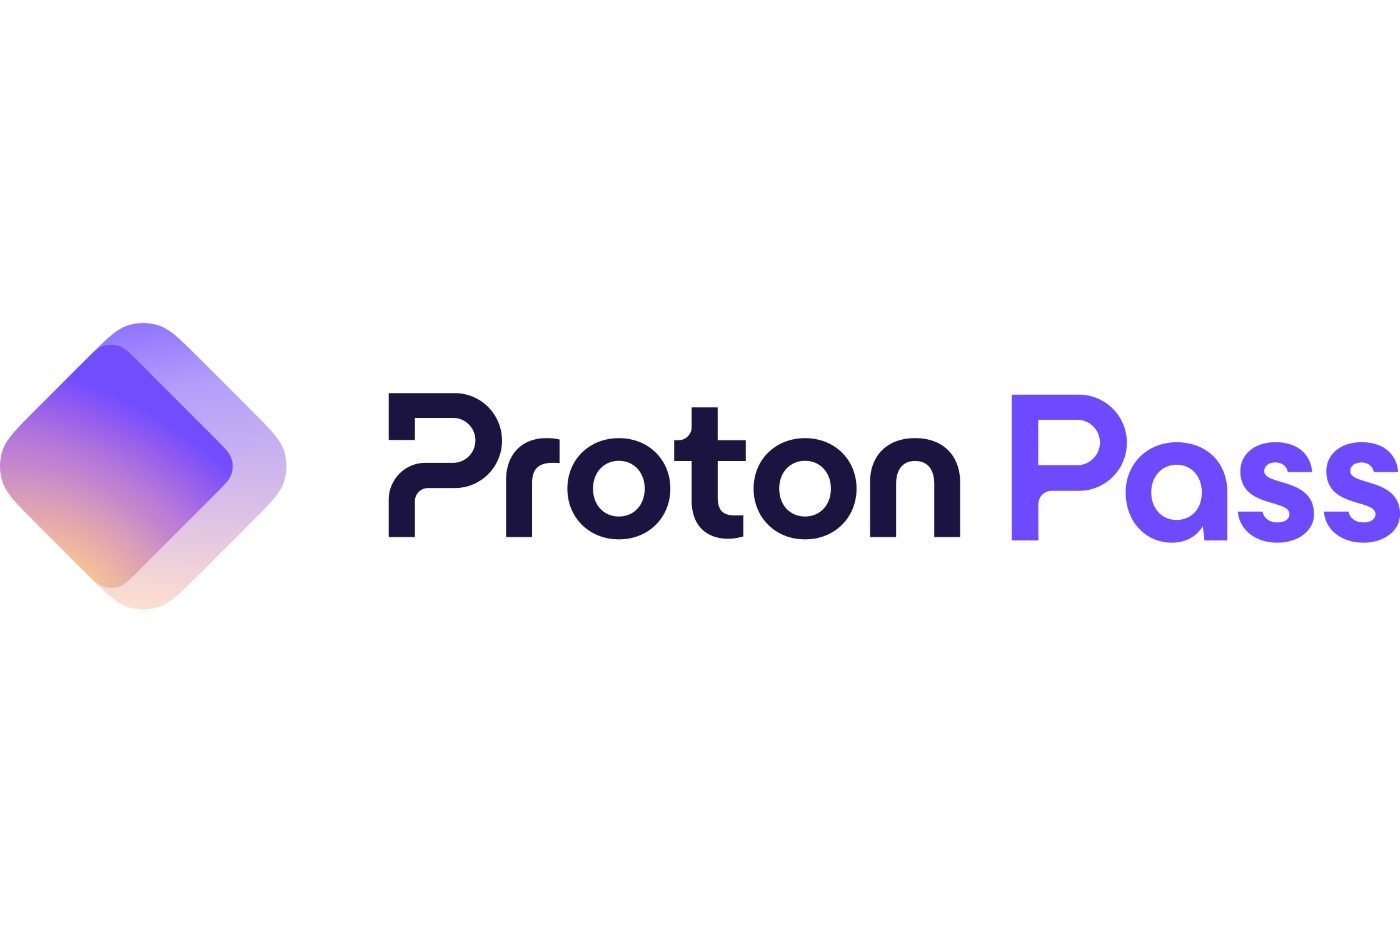 Proton Pass